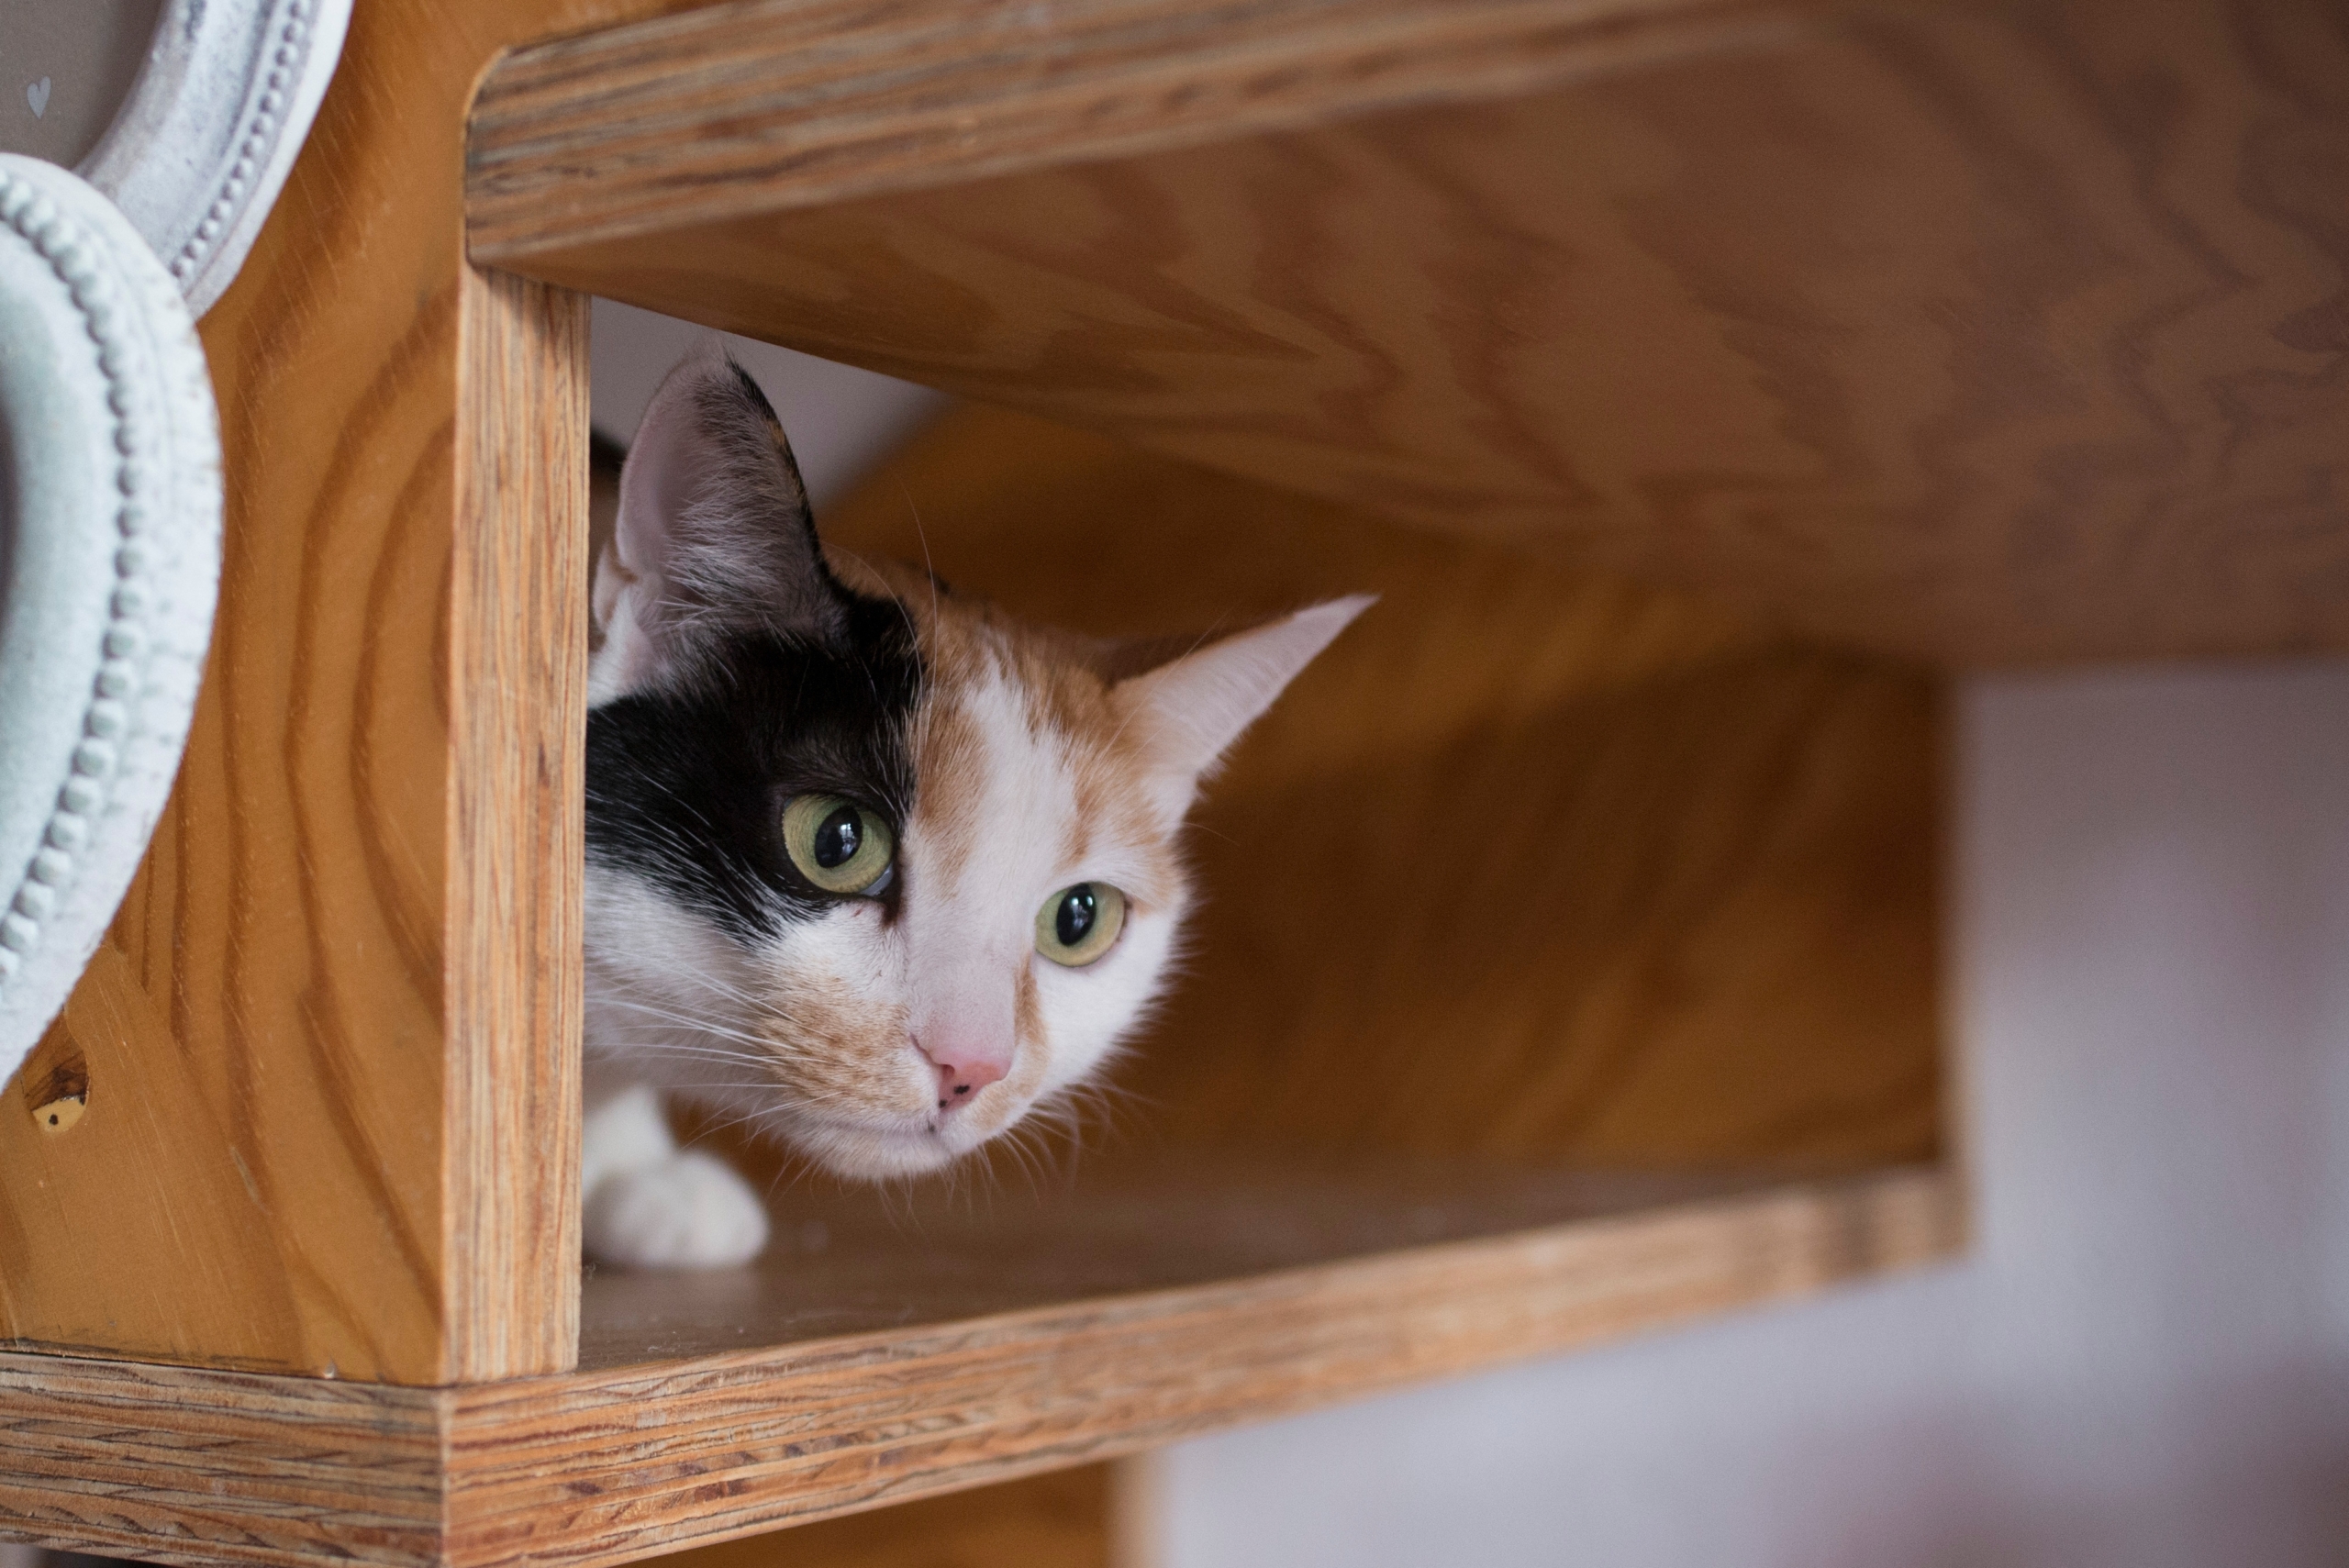 Chú mèo nhỏ đang trốn dưới cầu thang. (Ảnh: Shutterstock)